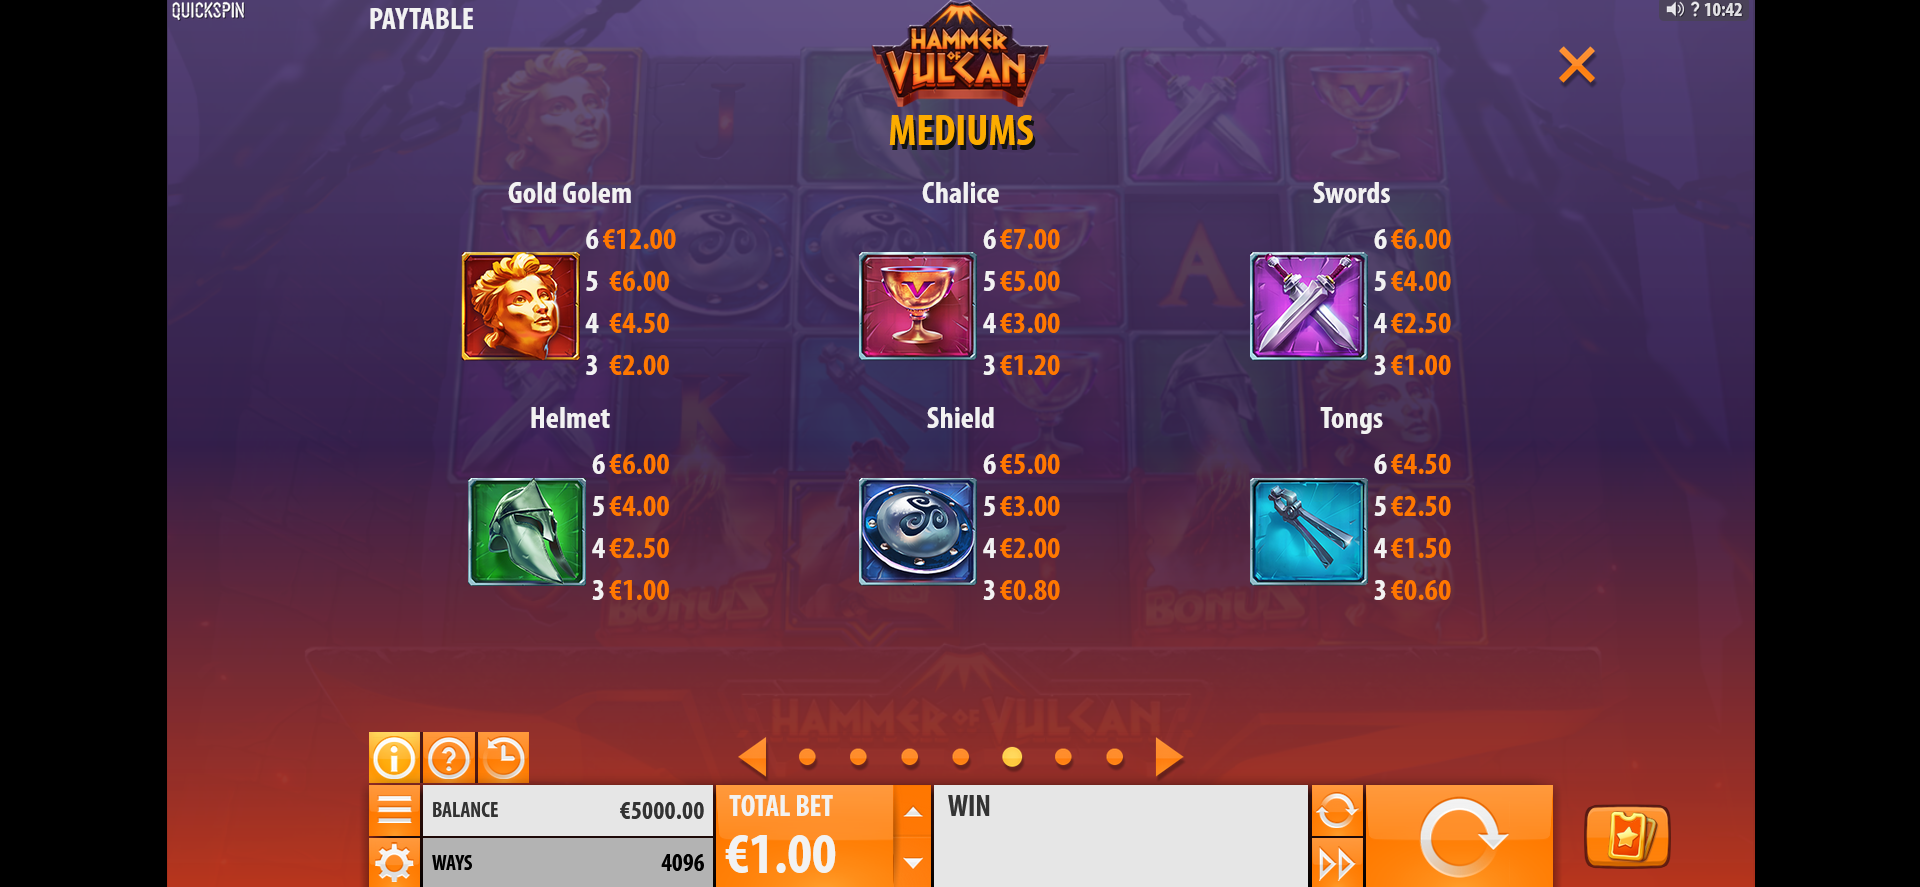 tabella dei simboli della slot machine hammer of vulcan